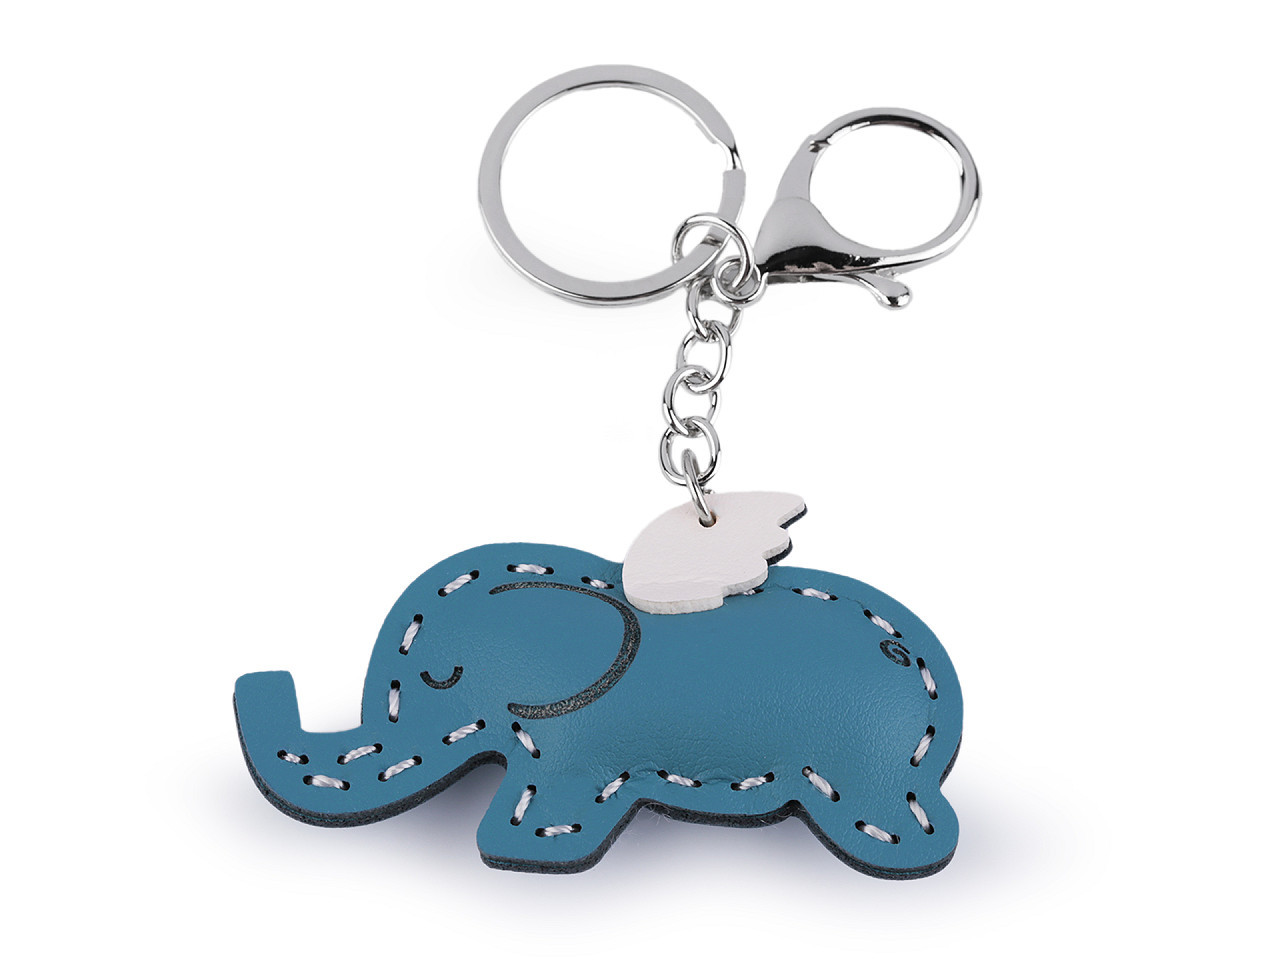 Přívěsek na batoh / klíče jednorožec, slon, barva 6 modrá slon